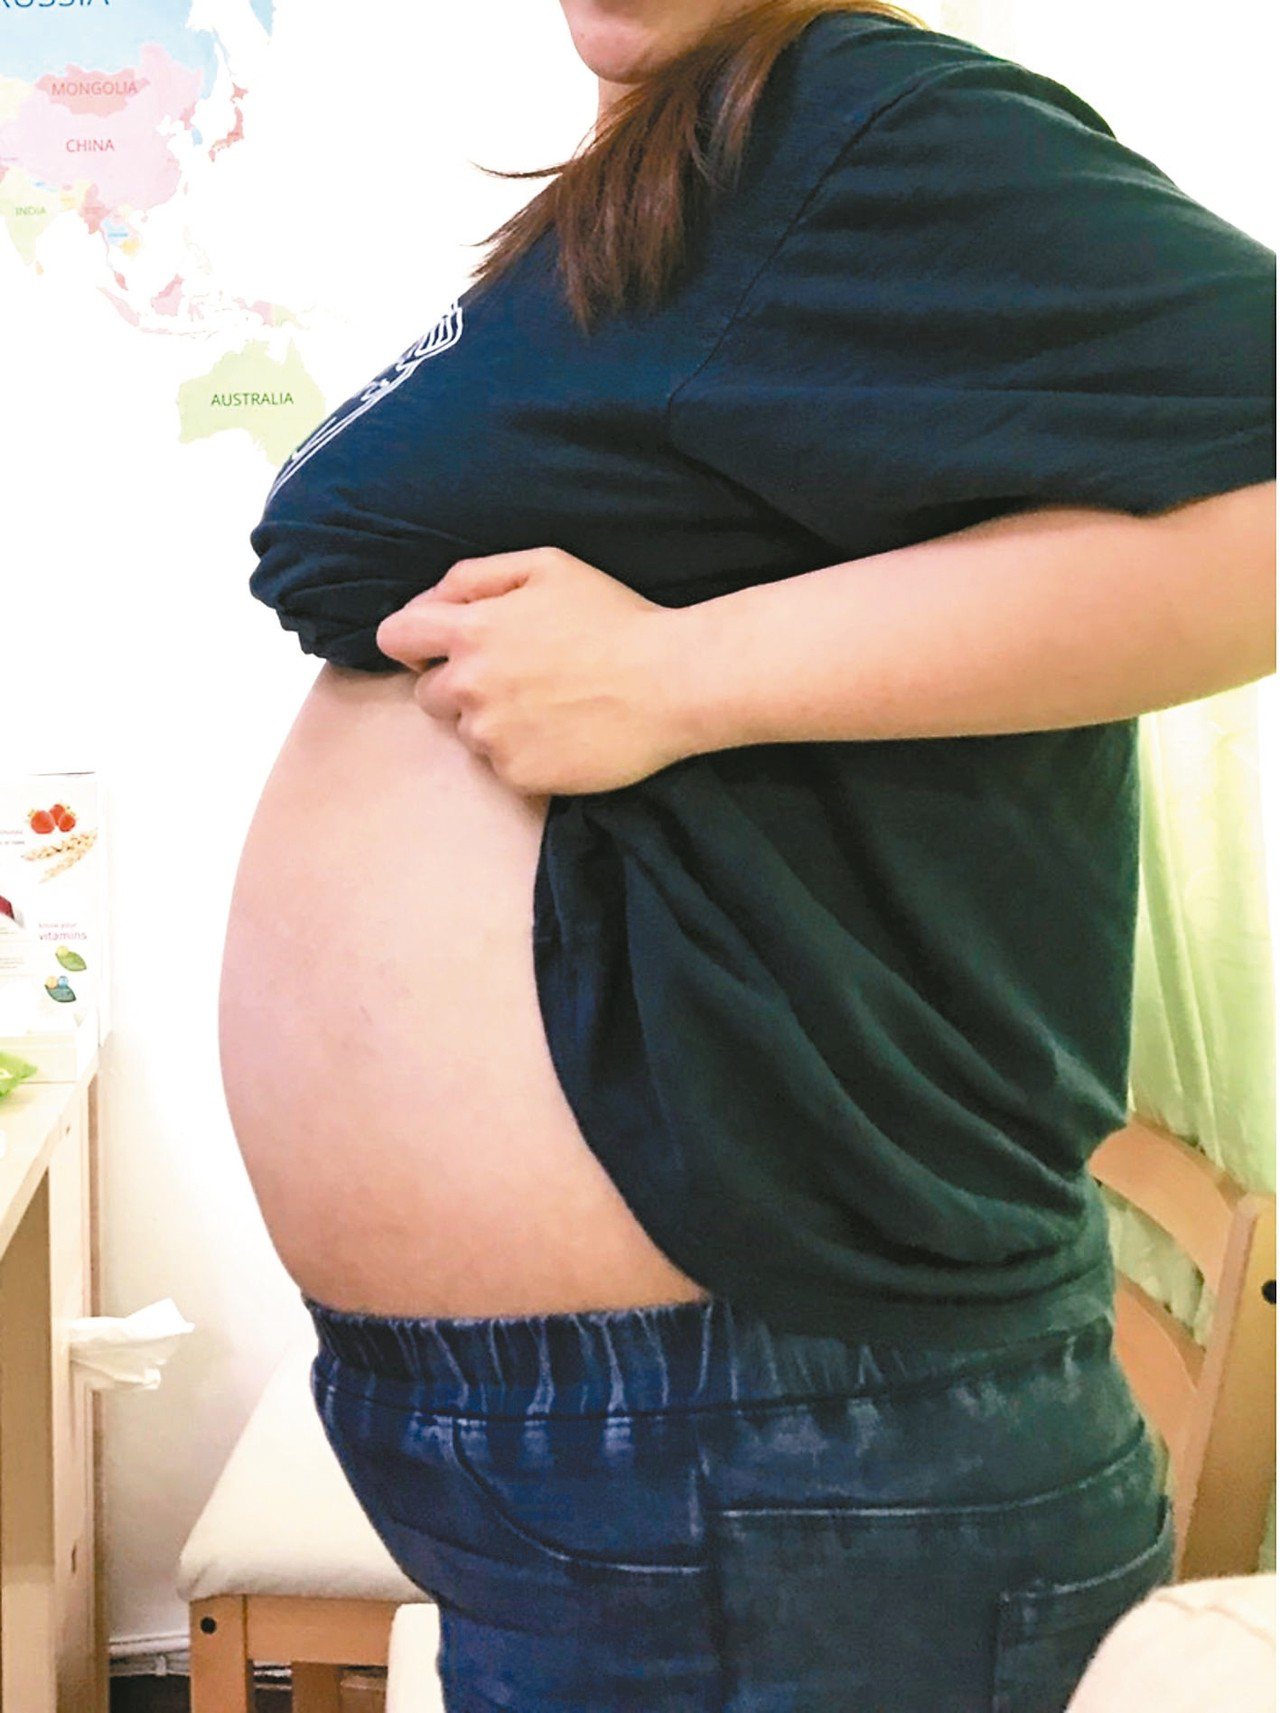 28歲輕熟女減肥卻發現腹部沒瘦，就醫才知輸卵管長了40公分、16公斤的大水瘤。圖為患者術前照片。